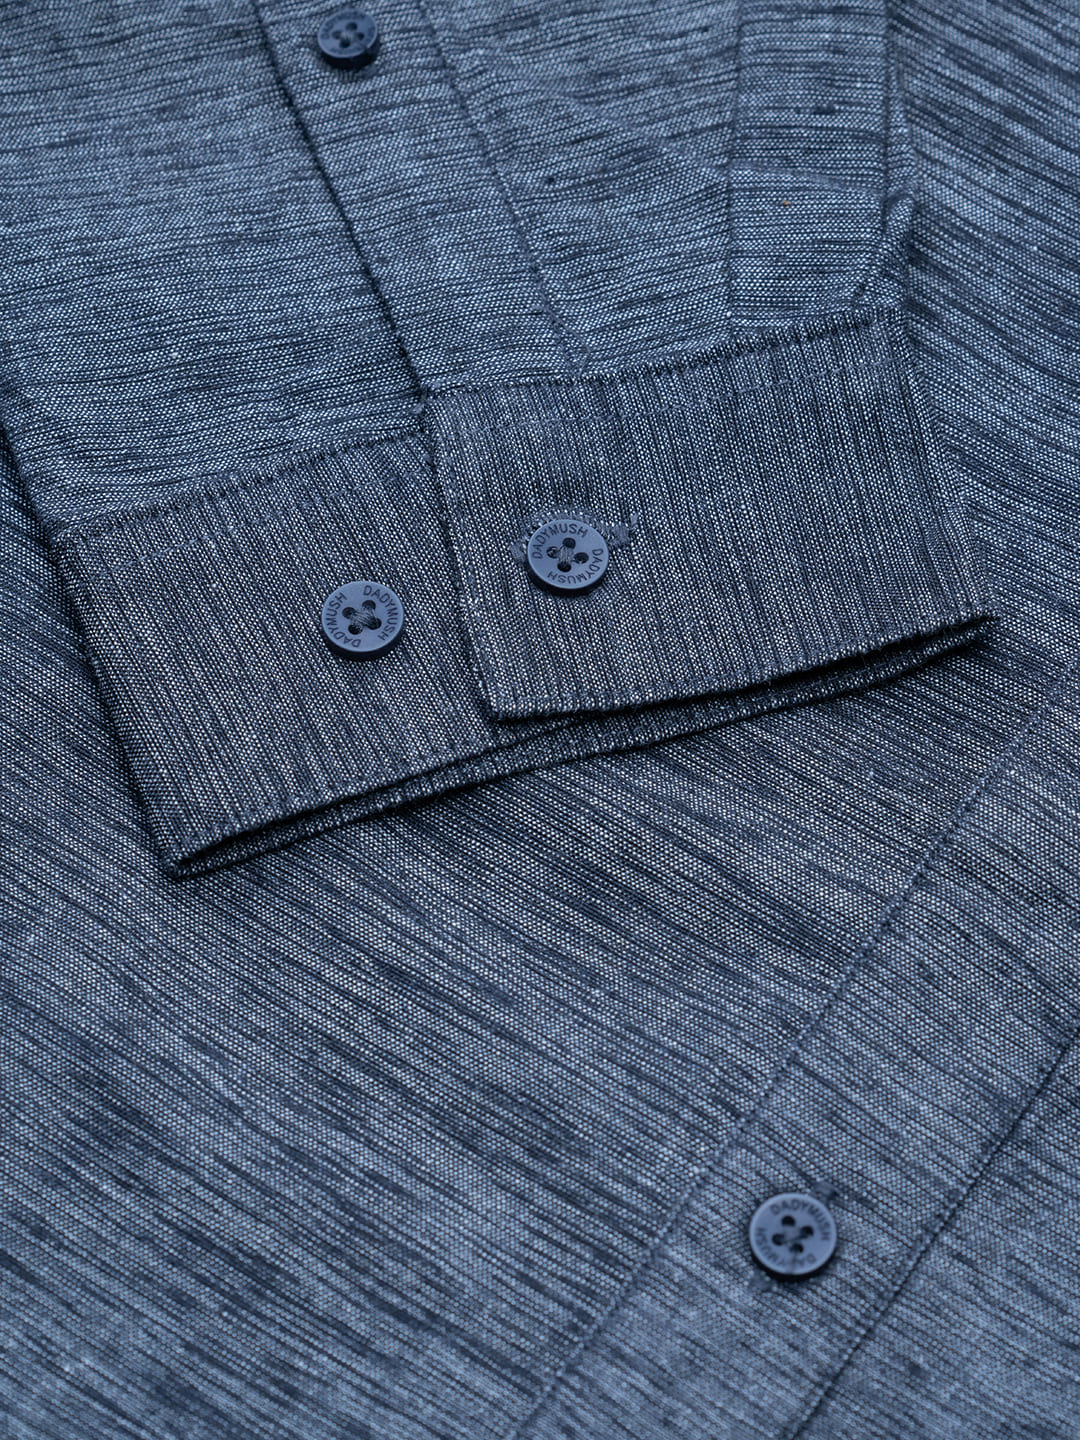 Black gray woven Semi formal shirt – DadyMush